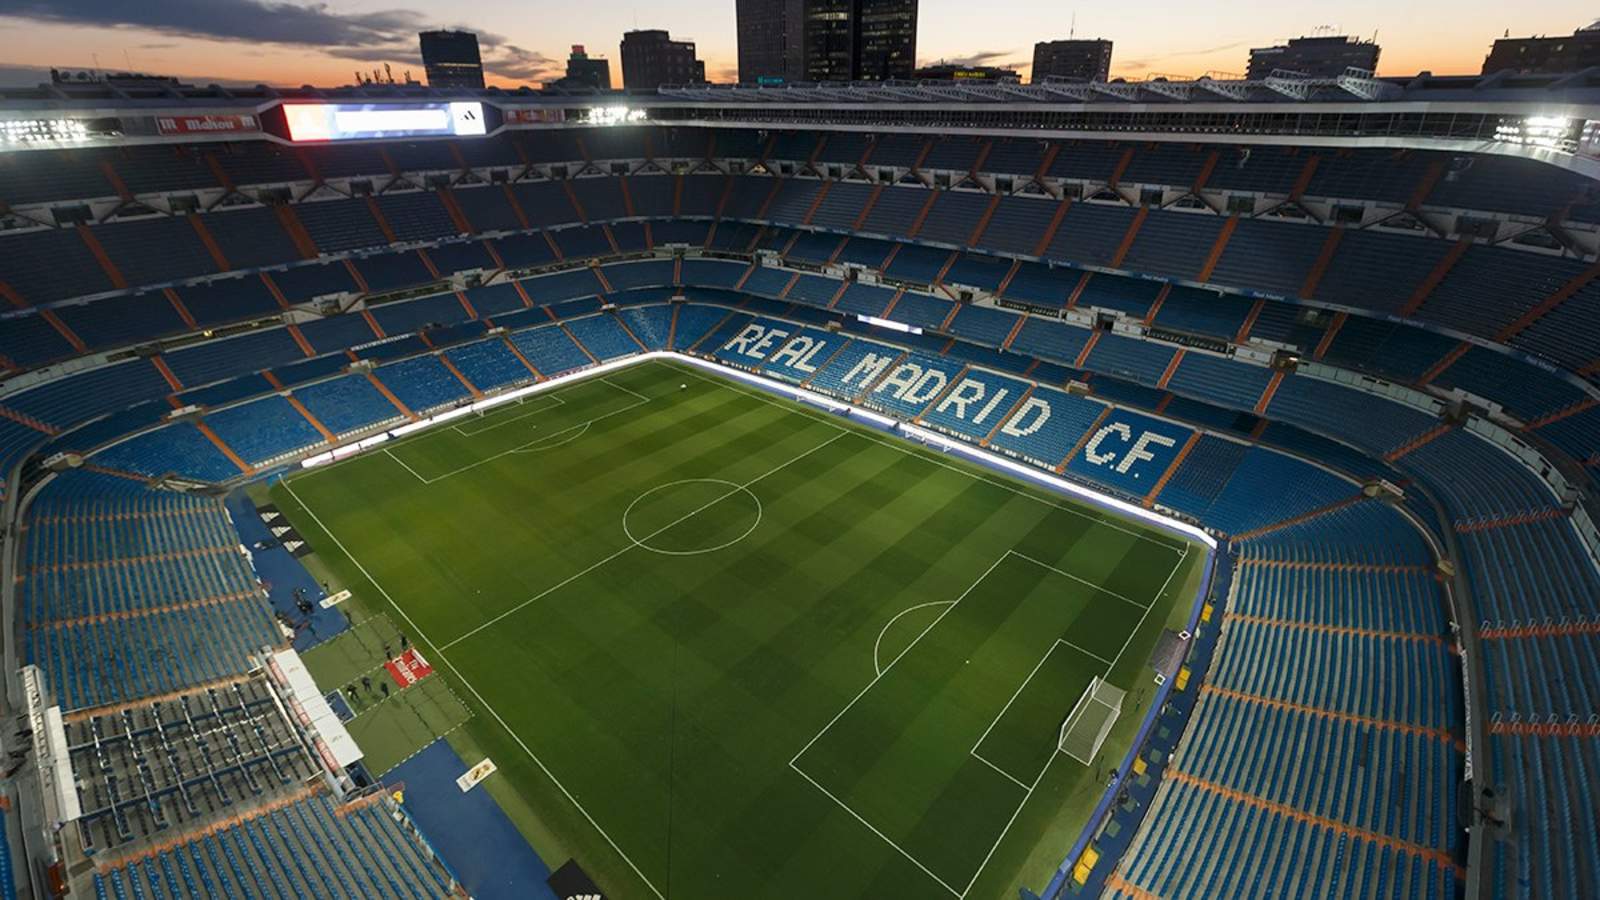 El Santiago Bernabéu albergará “la Final del Siglo” el domingo 9 de diciembre, a menos de que proceda la inconformidad de Boca Jrs. (Especial)